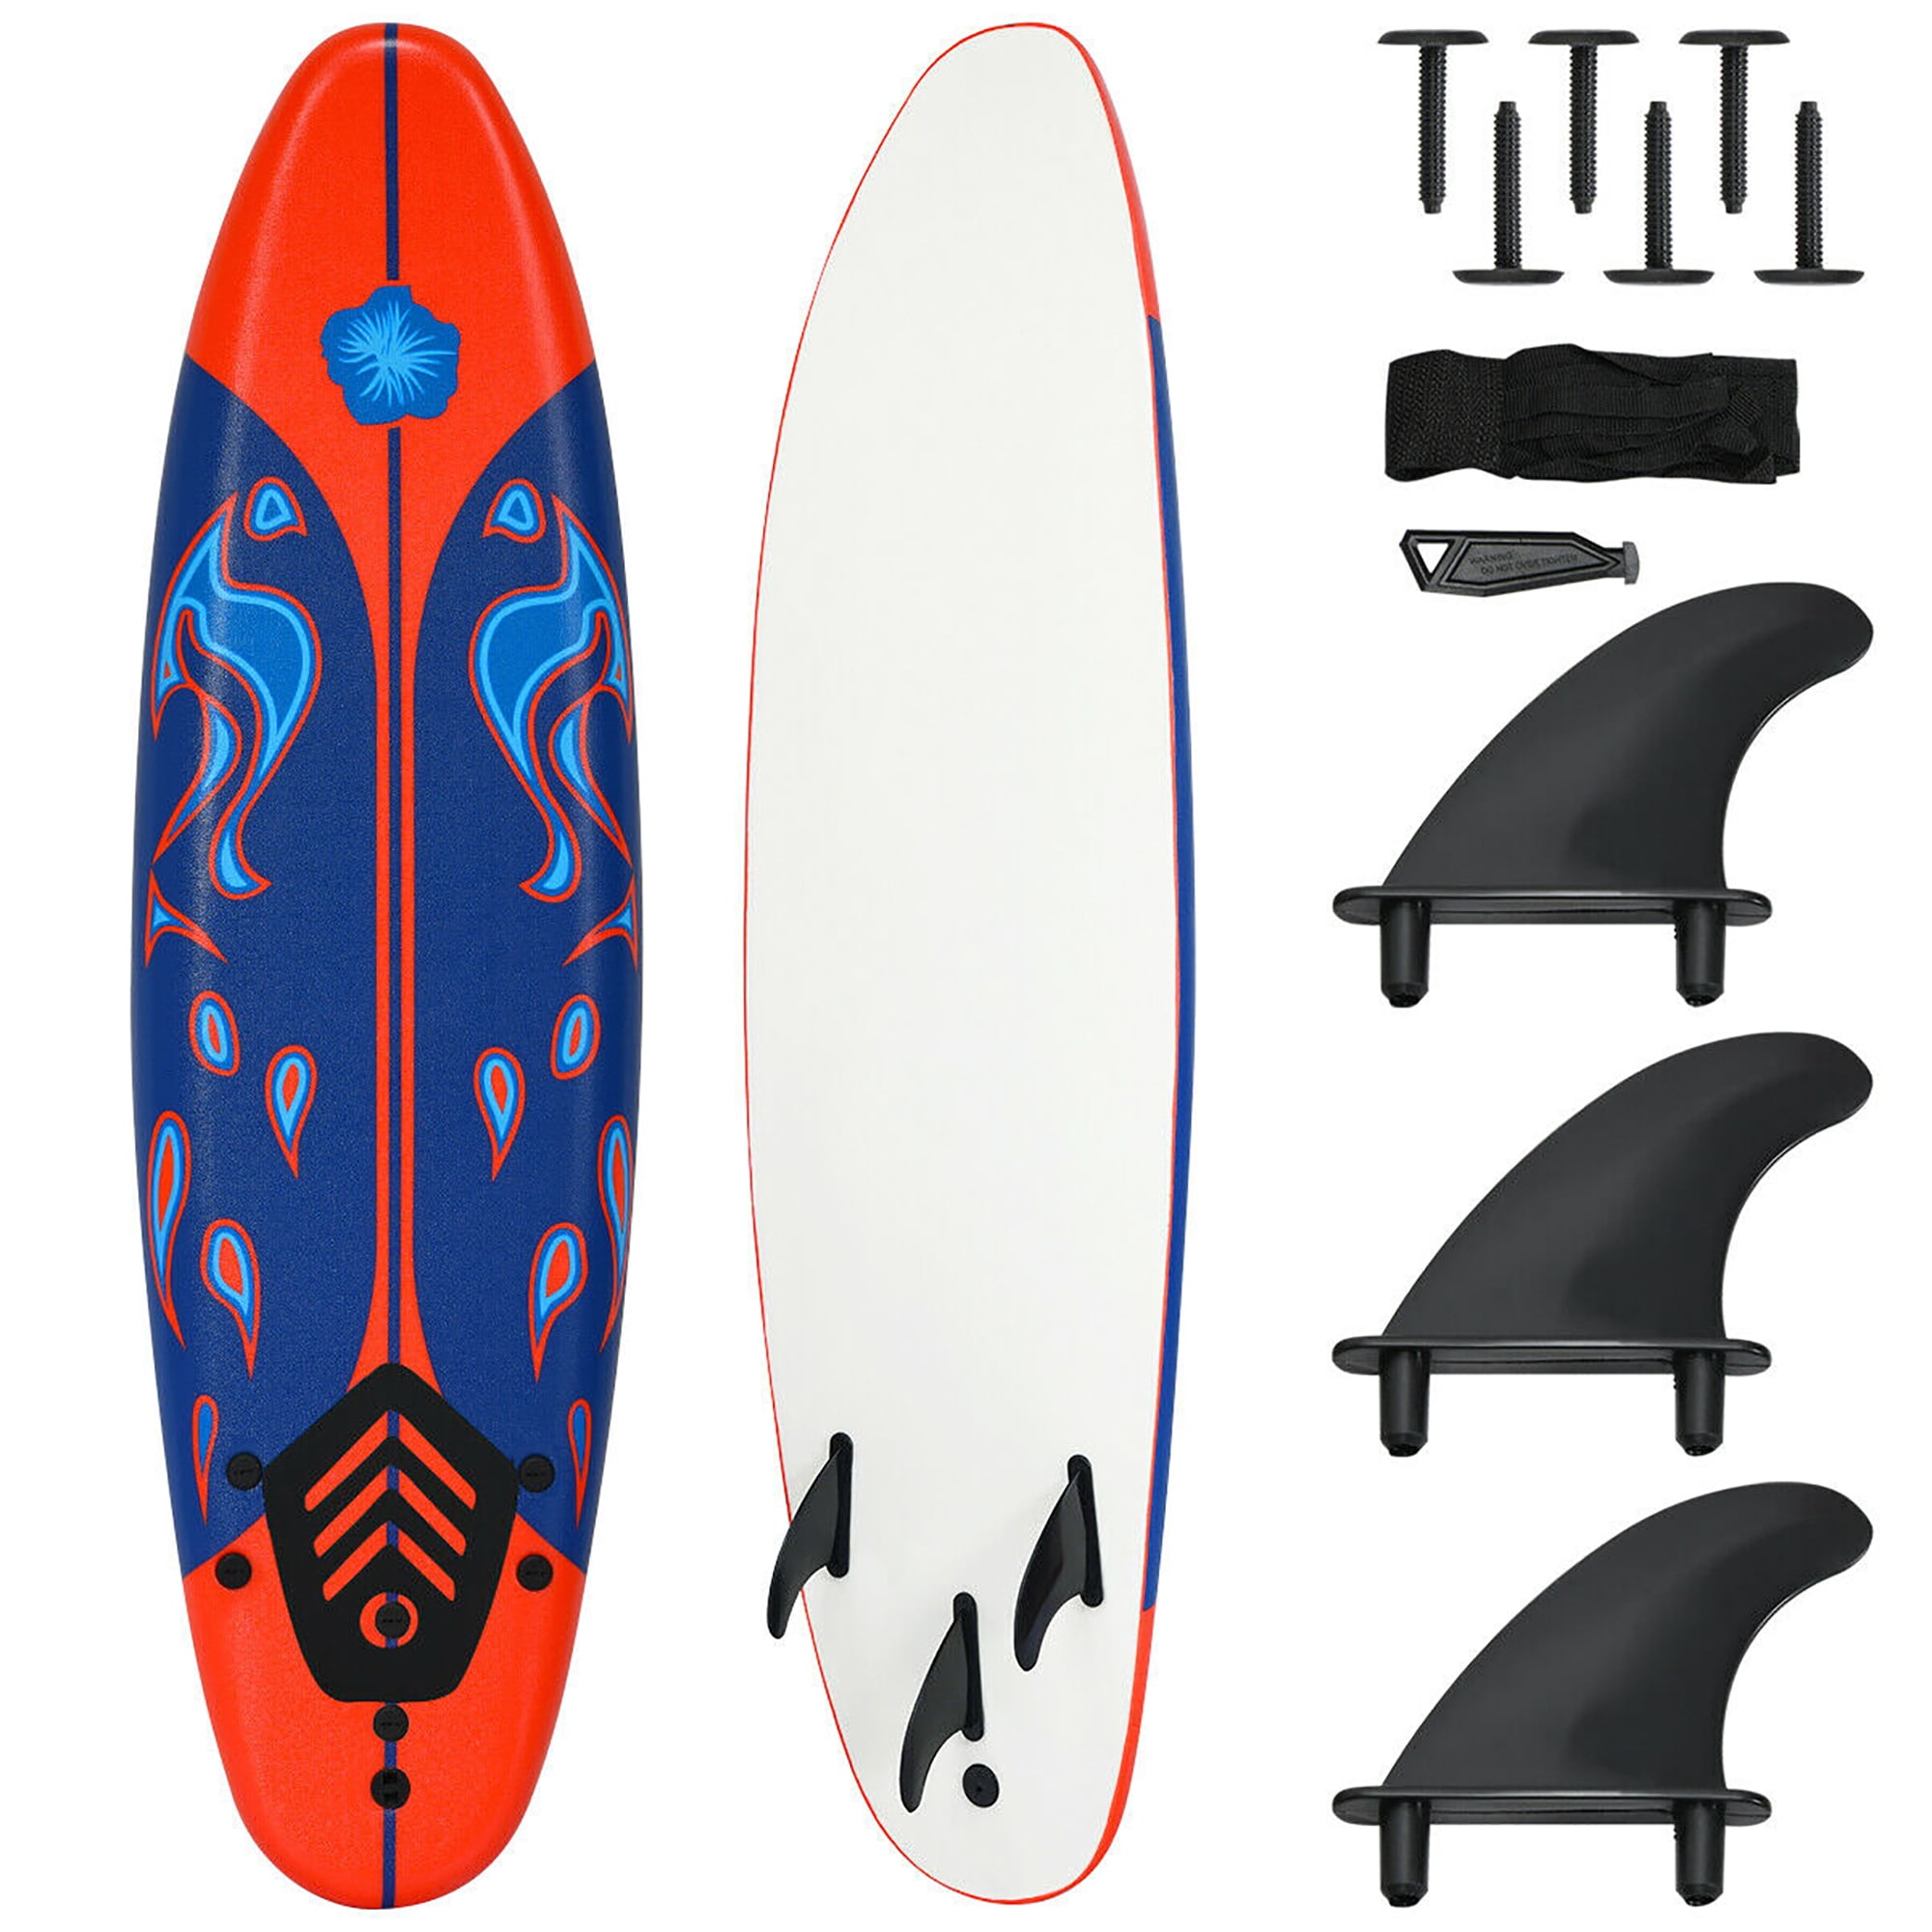 Foamie Boards Surfboards For Beginners Adults & Kids 6' High Speed Surfing Board 